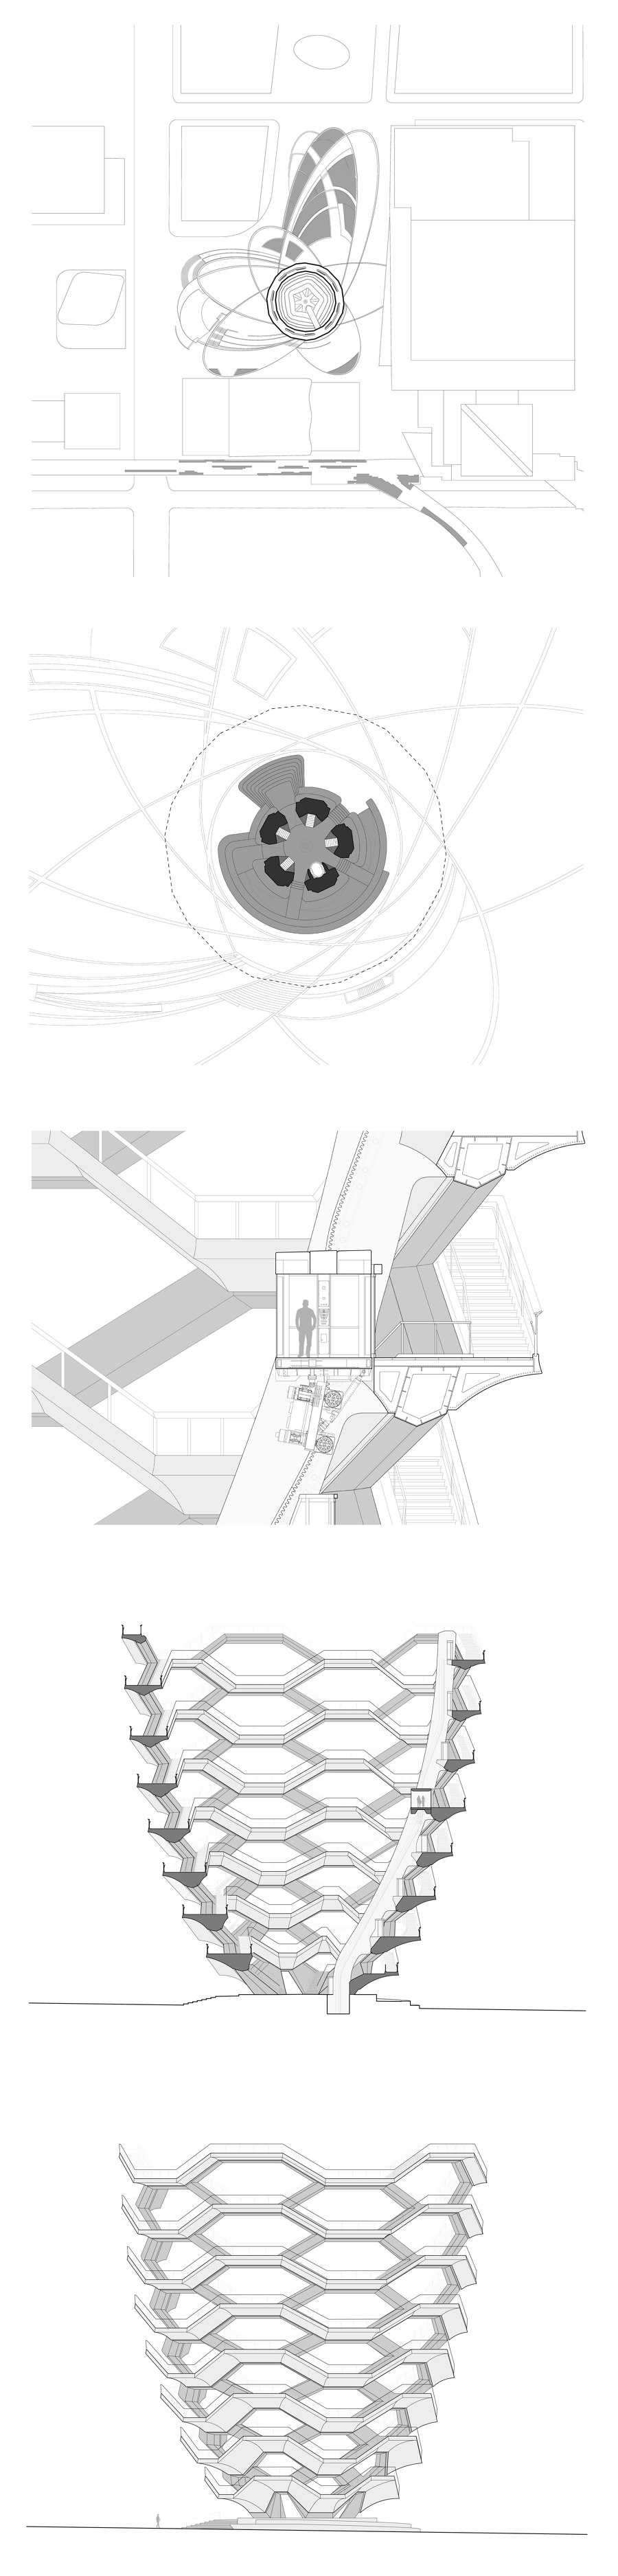 Vessel von Heatherwick Studio | Denkmäler/Skulpturen/Aussichtsplattformen